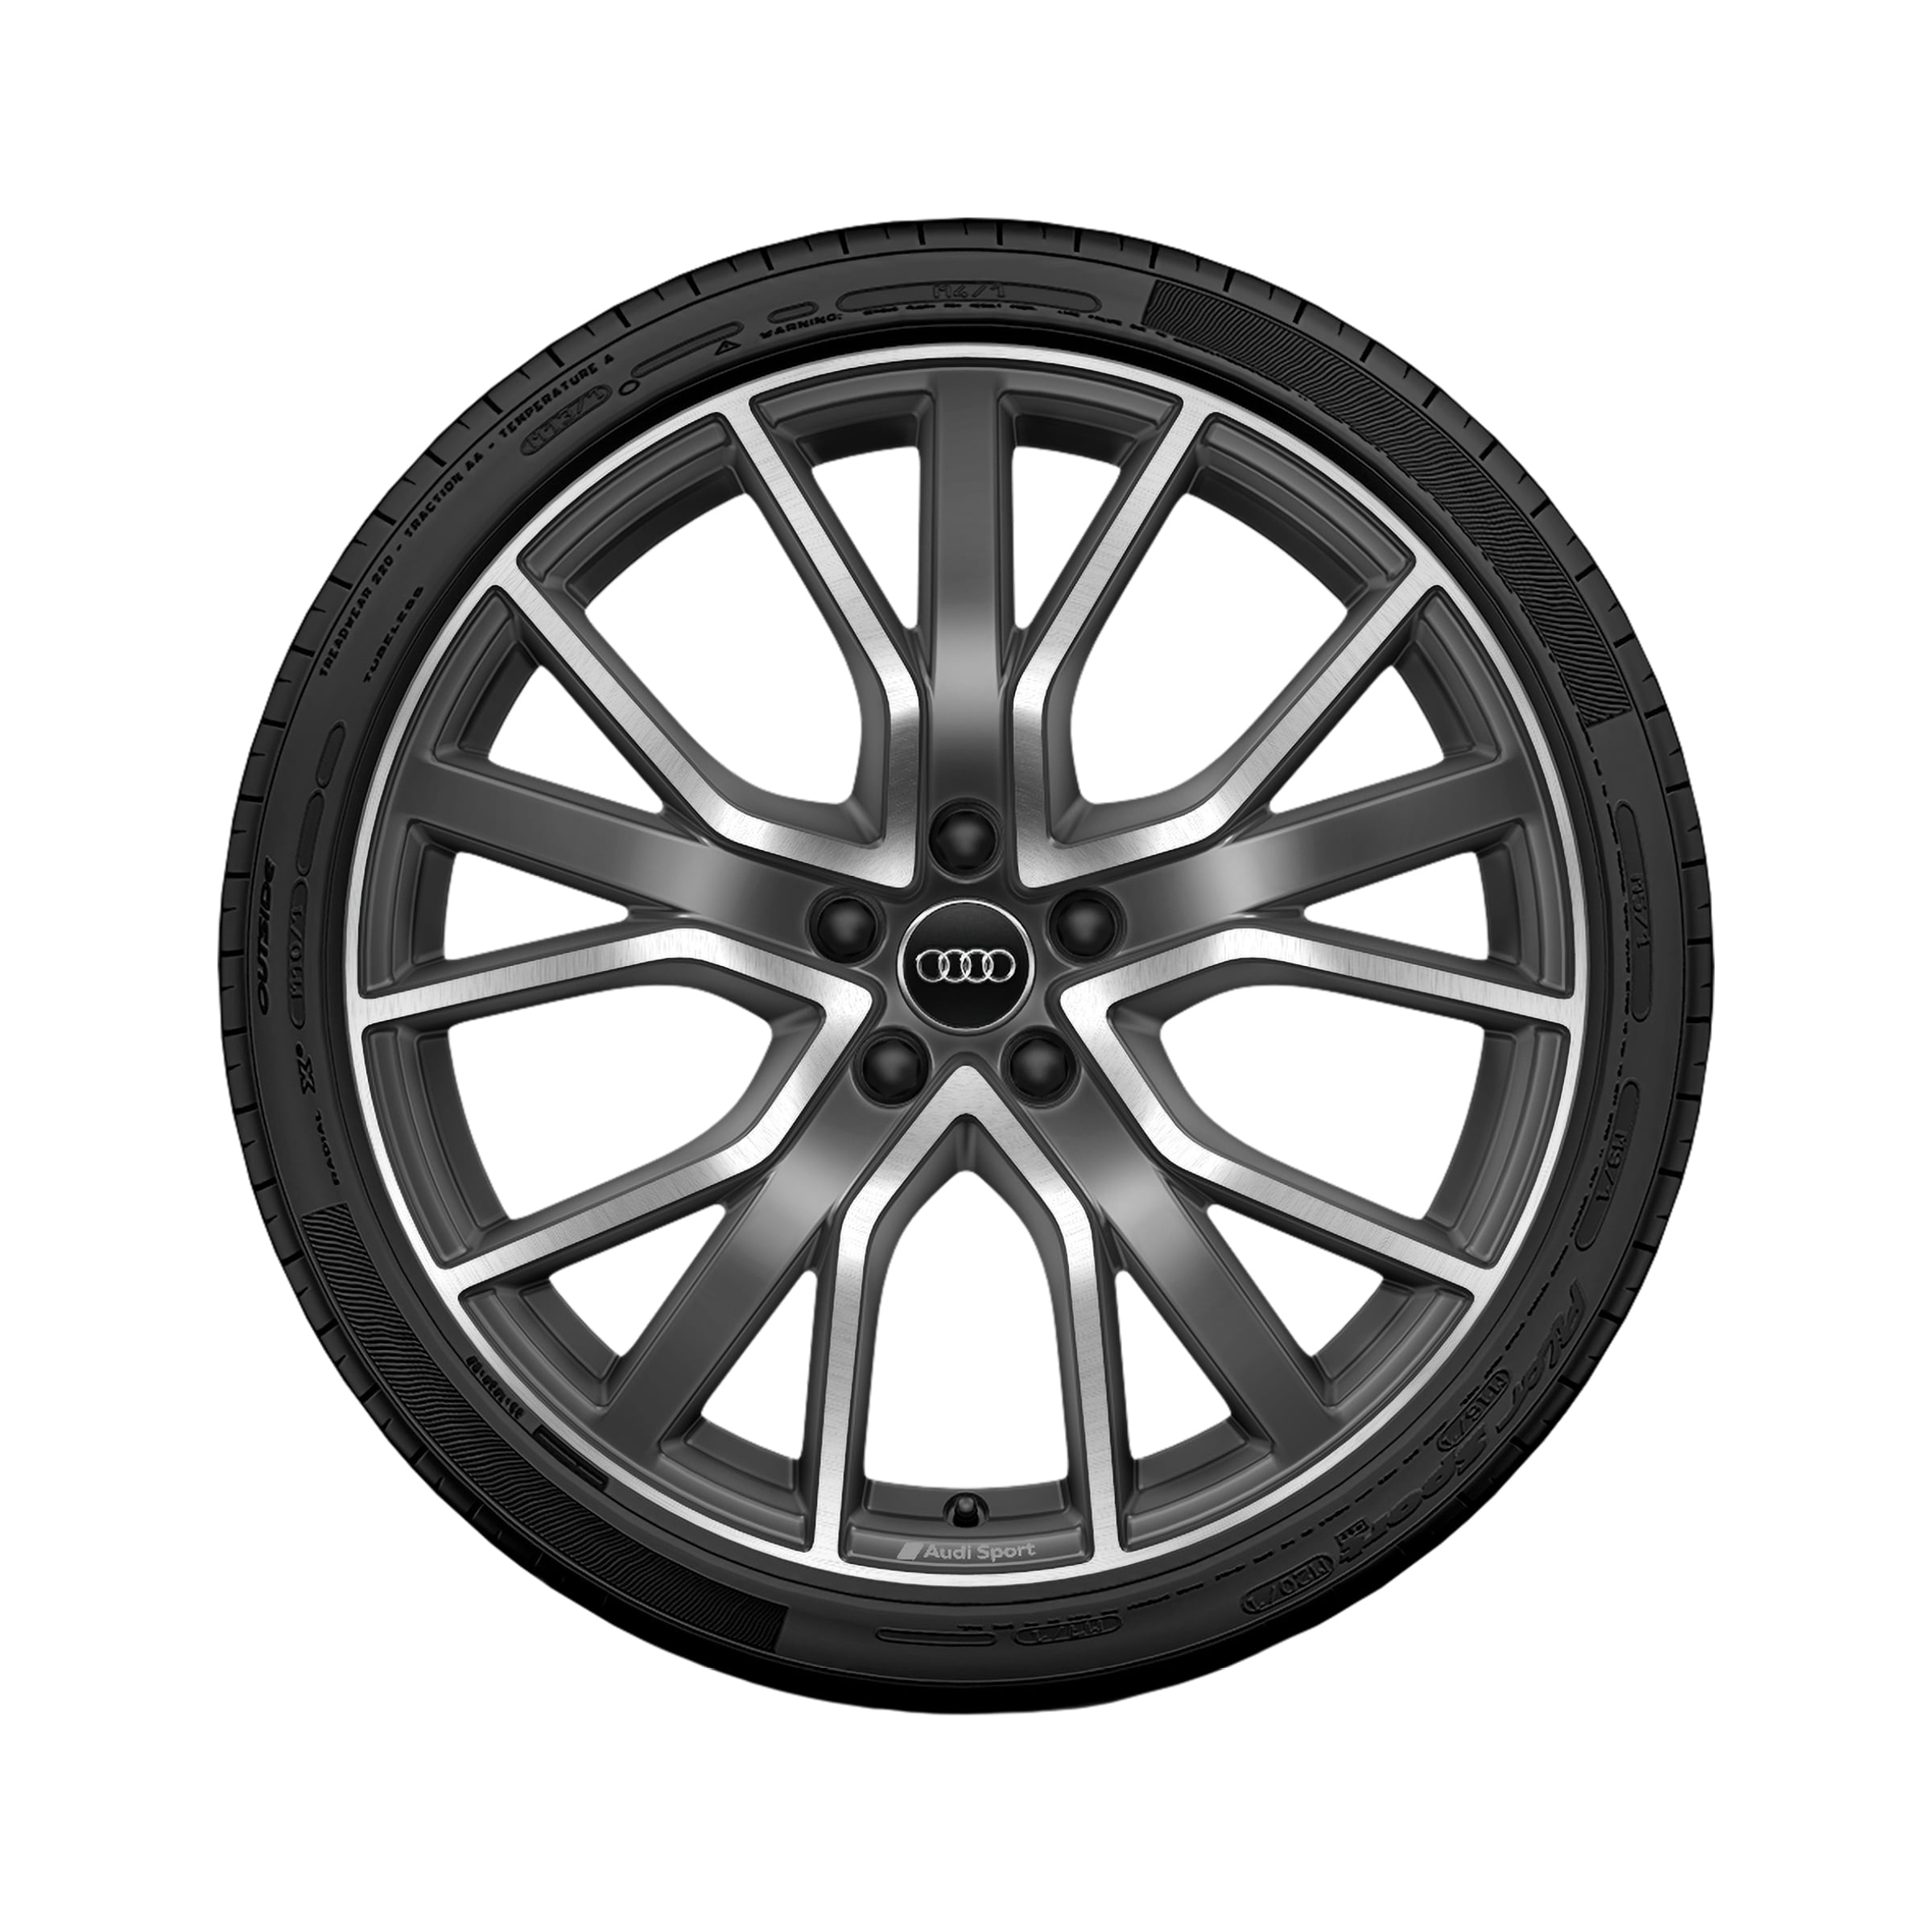 Winterkomplettradsatz Audi Q3 Alufelge 16 Zoll, Räder/Reifen-Zubehör